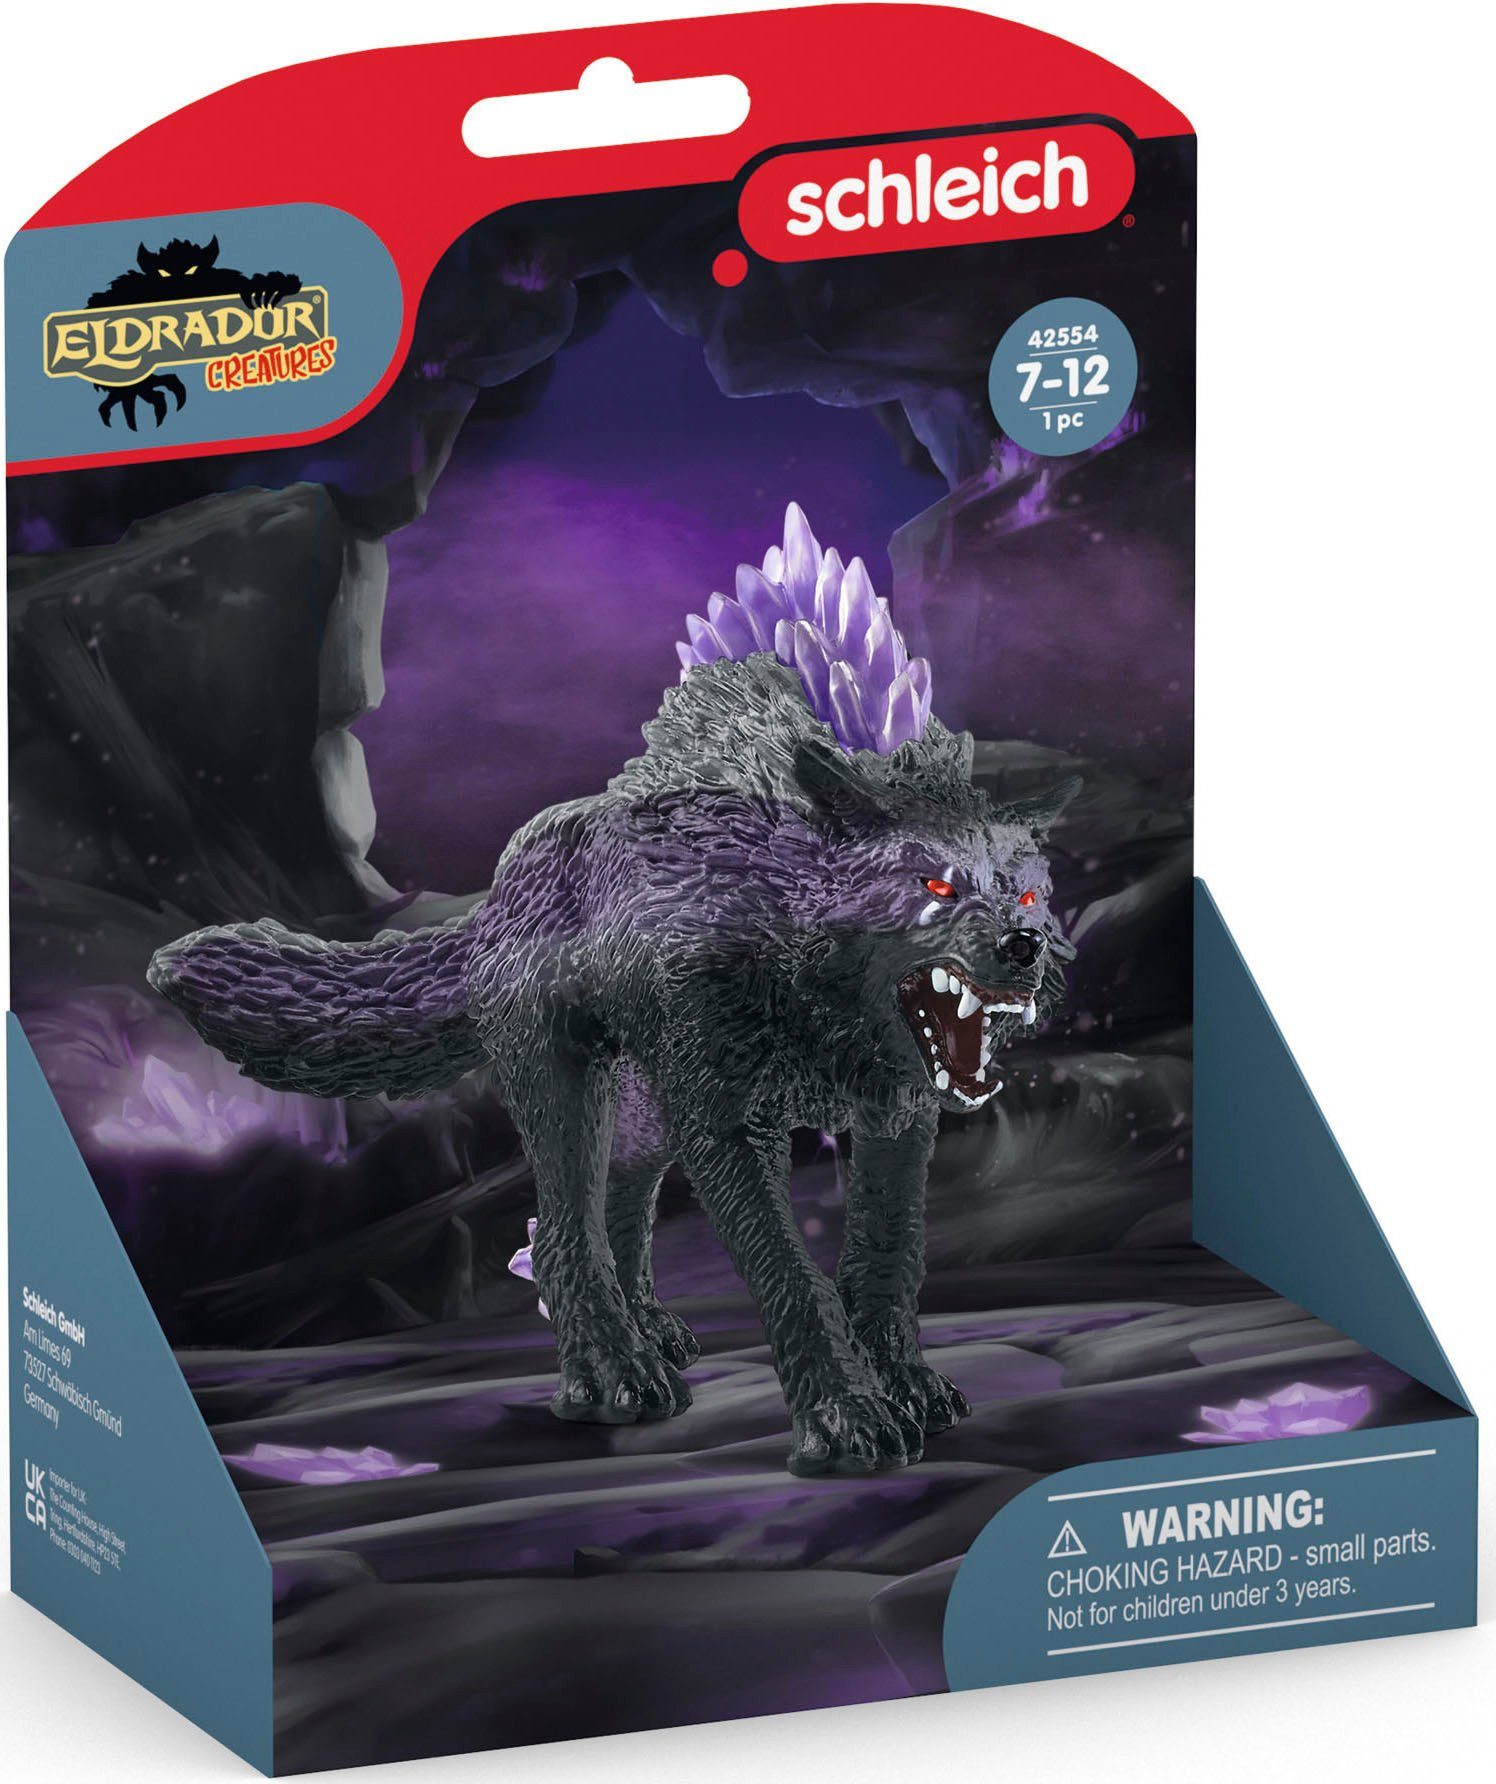 Schleich® Spielfigur (42554) Schattenwolf ELDRADOR®,